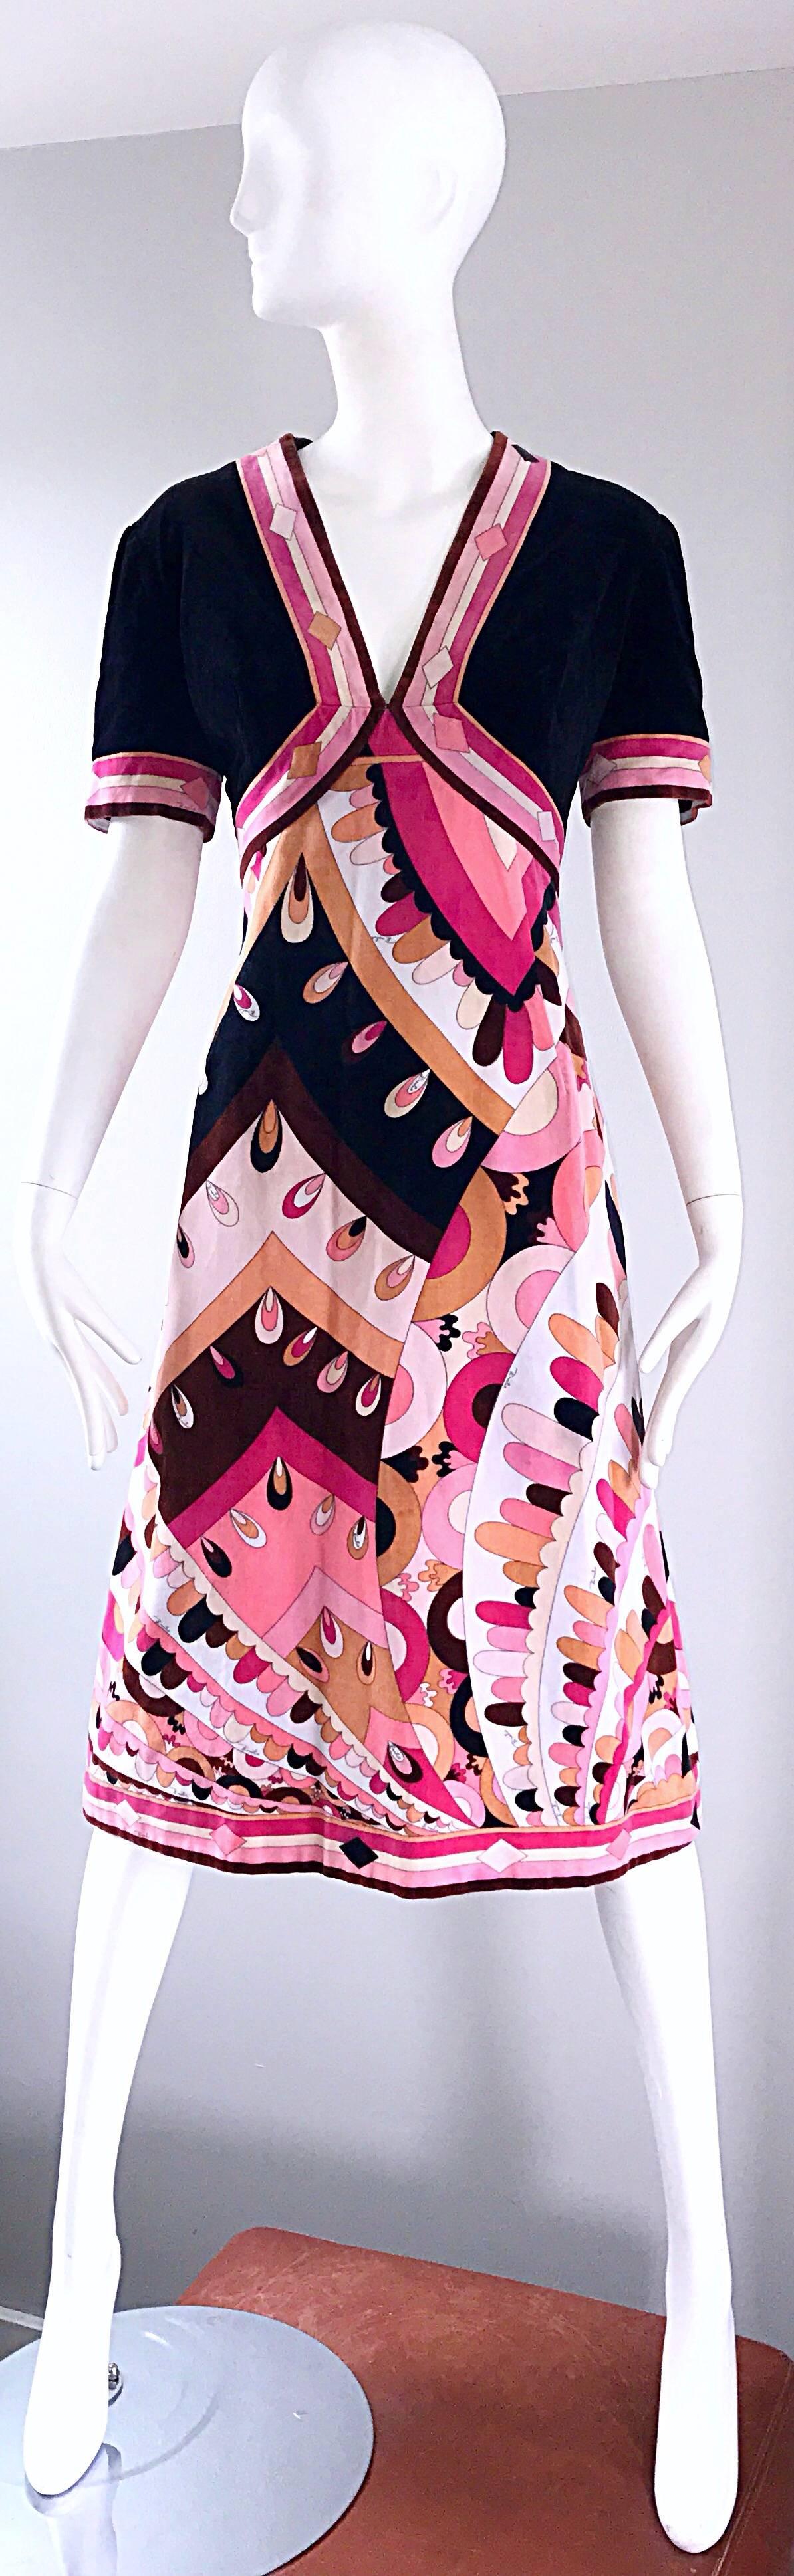 Erstaunliches und seltenes 1960er EMILIO PUCCI kurzärmeliges A-Linien-Kleid aus Samt! Mit dem charakteristischen Kaleidoskop-Print und dem Pucci-Schriftzug, der sporadisch darauf zu sehen ist. Samtstücke von Pucci sind äußerst selten zu finden und